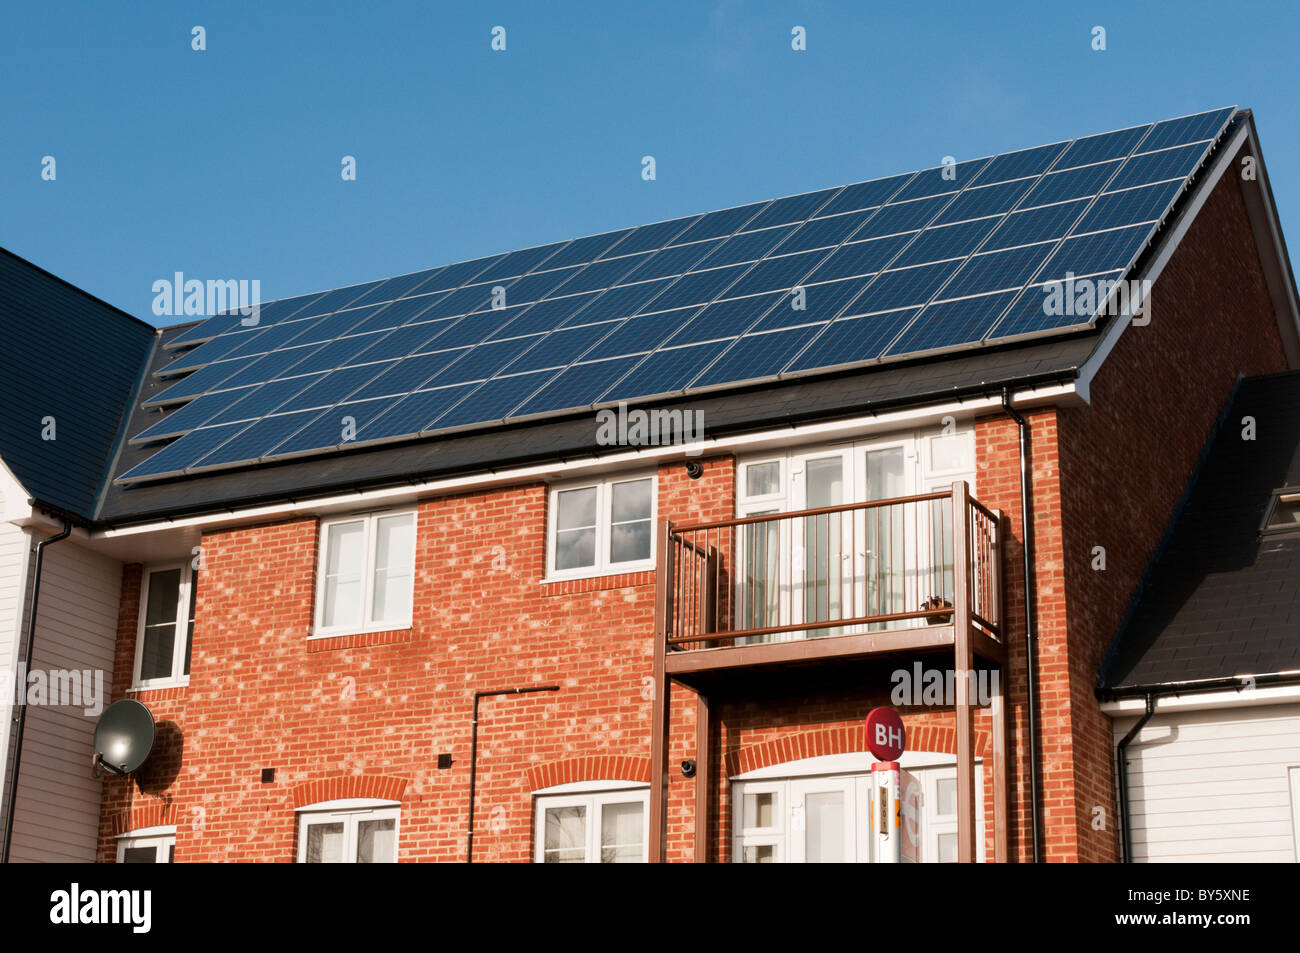 Eine Versorgung mit erneuerbaren Energien in Form von Photovoltaik-Modulen auf dem Dach einer Neuentwicklung in Bromley, Kent, England Stockfoto